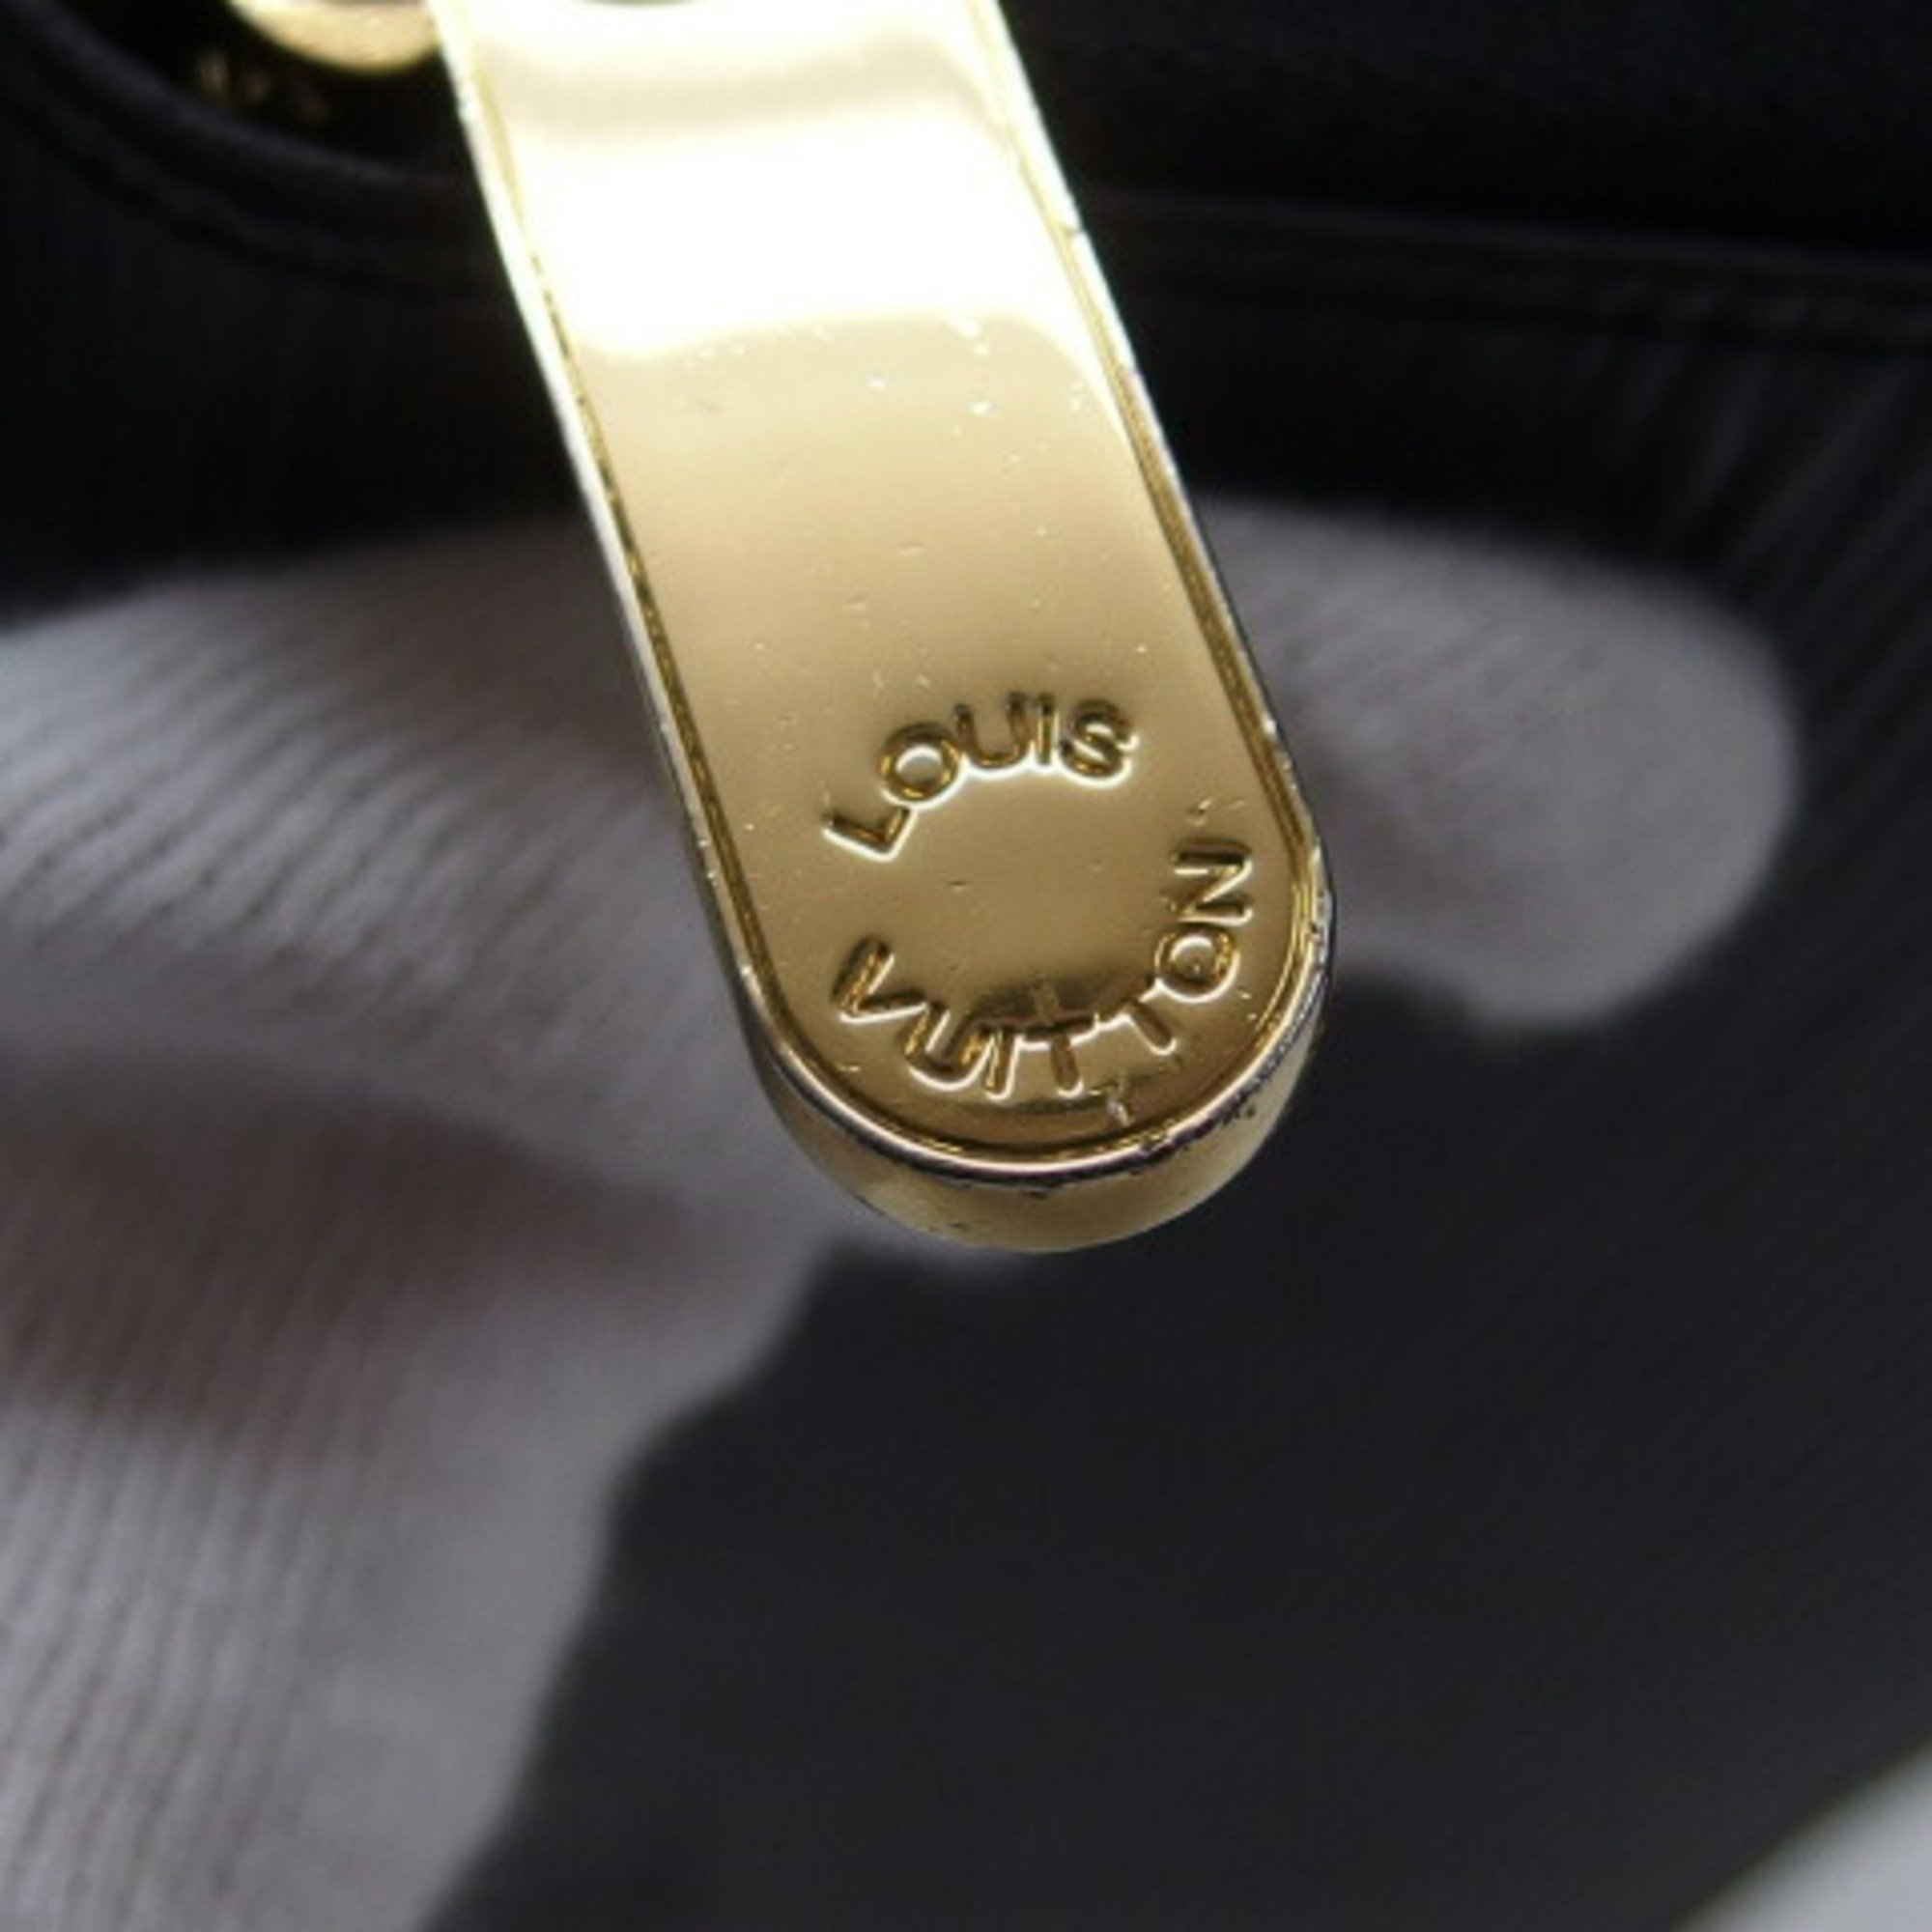 Louis Vuitton Epi Zippy Wallet Black M68755